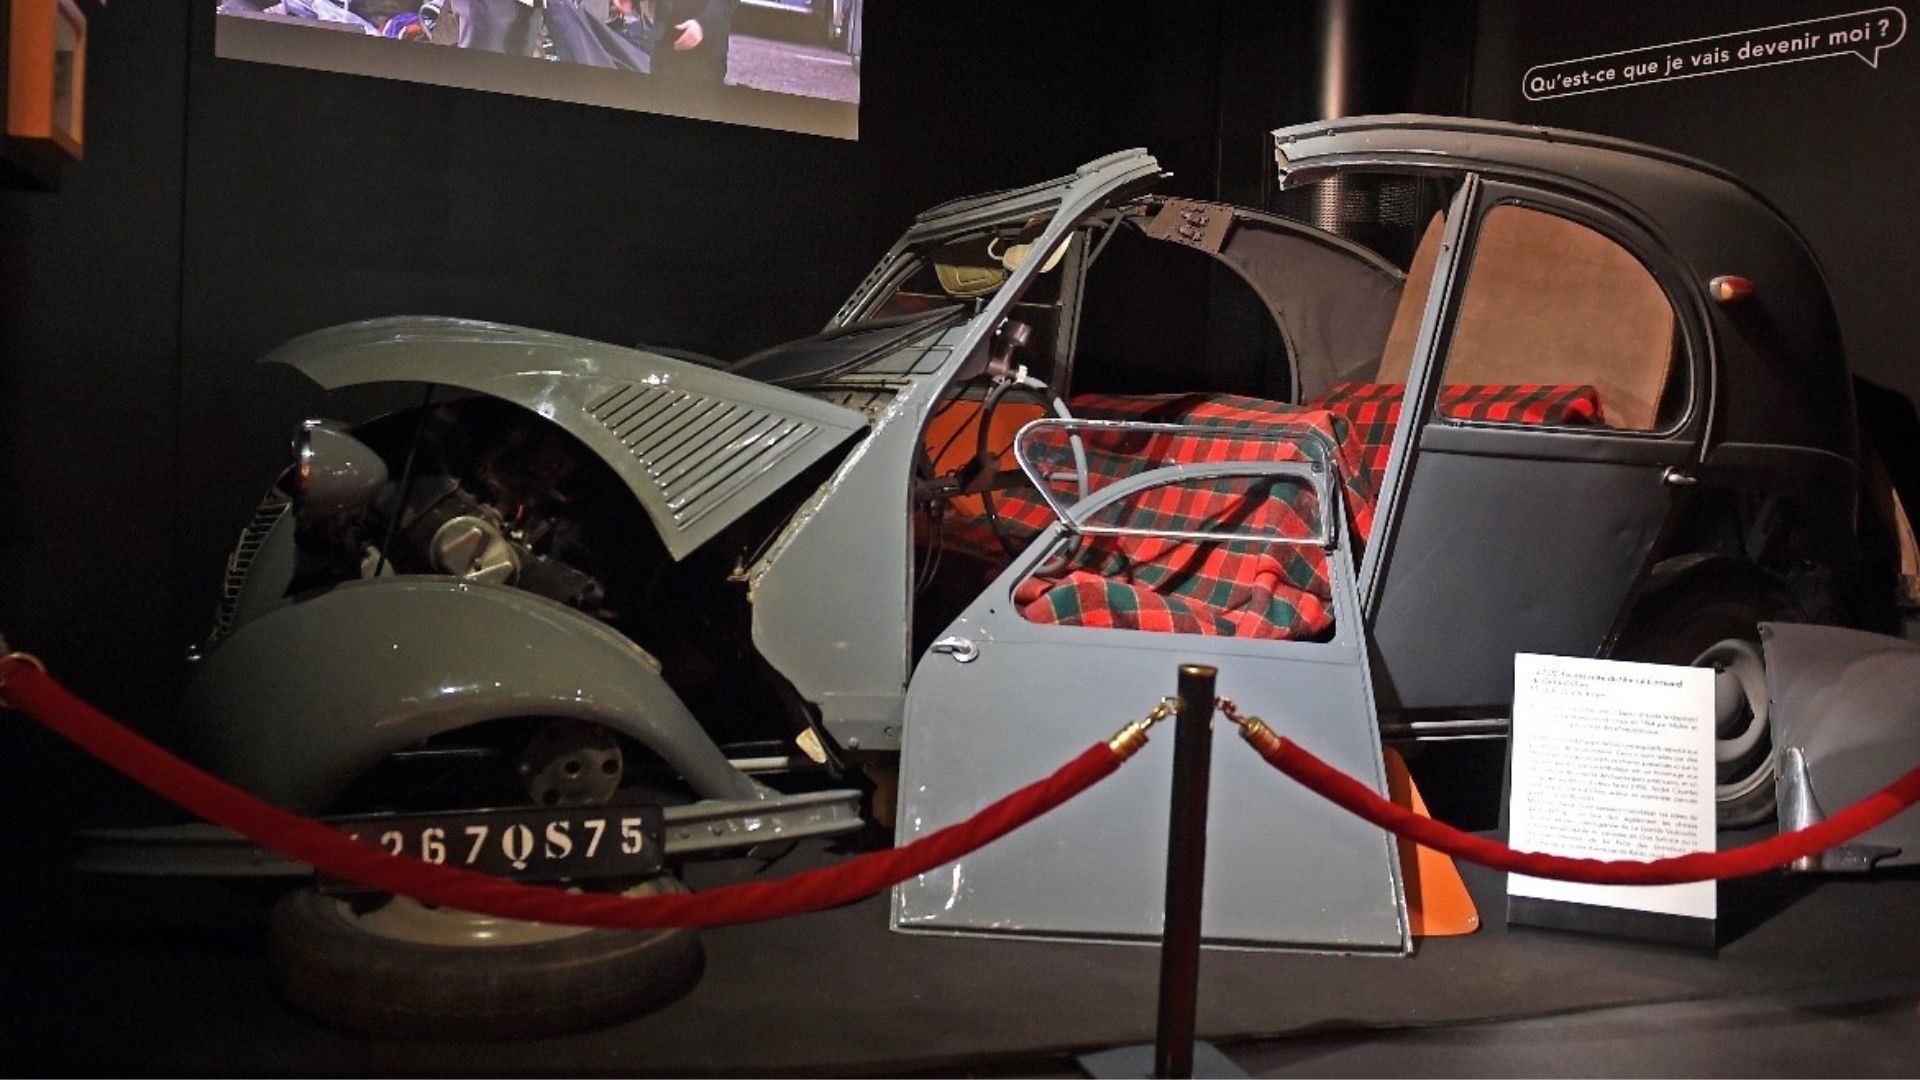 Tourisme m2A - Musée national de l'automobile - Louis de Funès